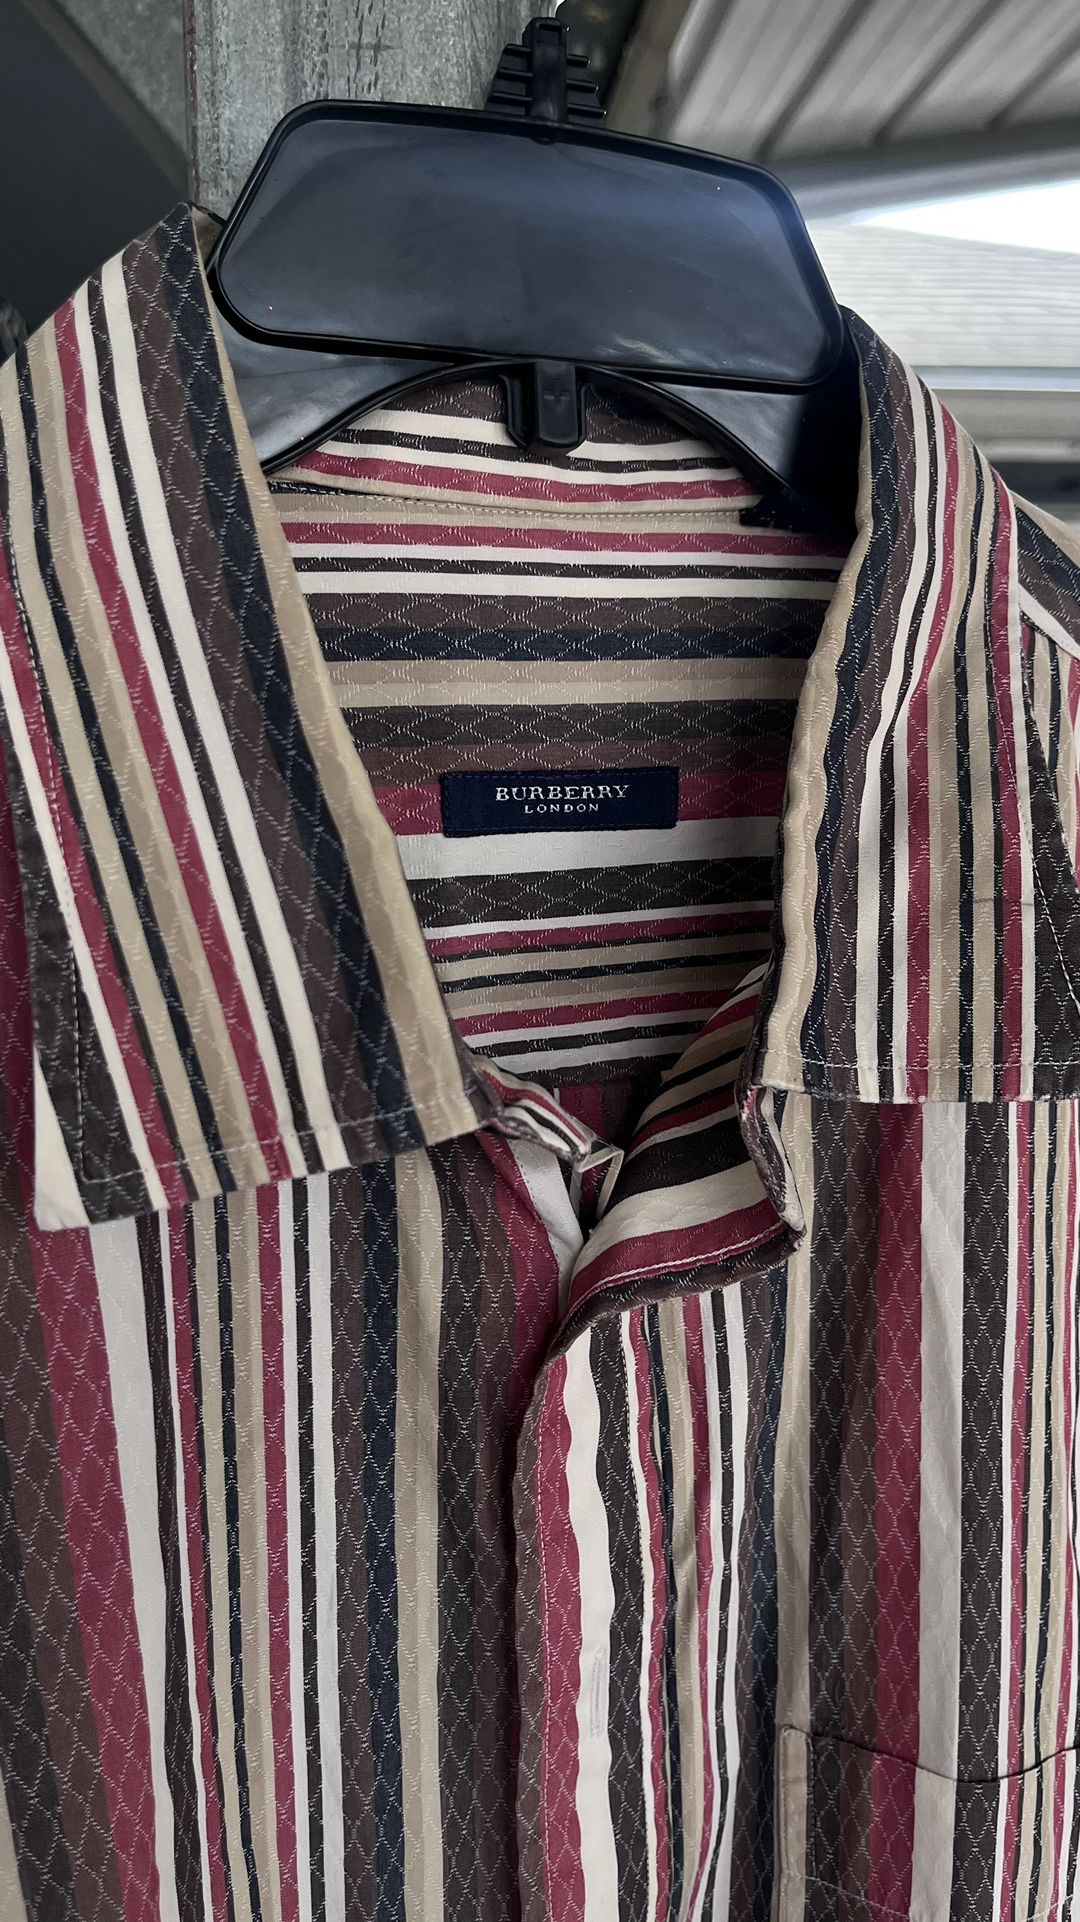 Burberry London Dress Shirt Long Sleeve Button Down Vertical Stripes Mens Sz XXL